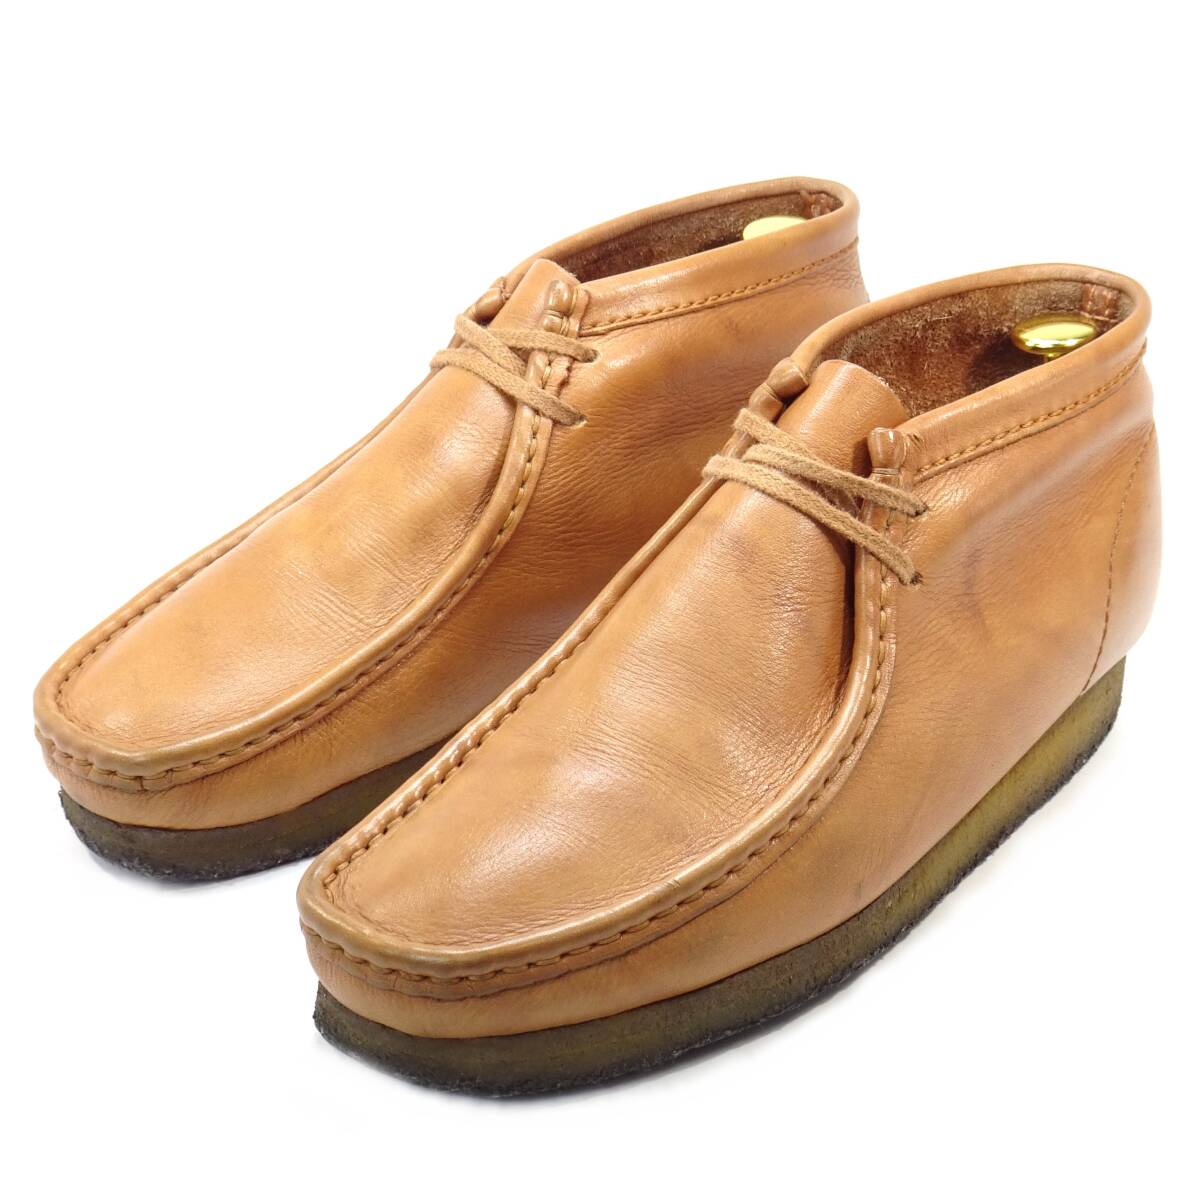 即決 Clarks Wallabees UK 7 ワラビーブーツ クラークス メンズ 茶 ブラウン 本革 モカシン 本皮 カジュアル 革靴 クレープソール 紳士靴_画像1